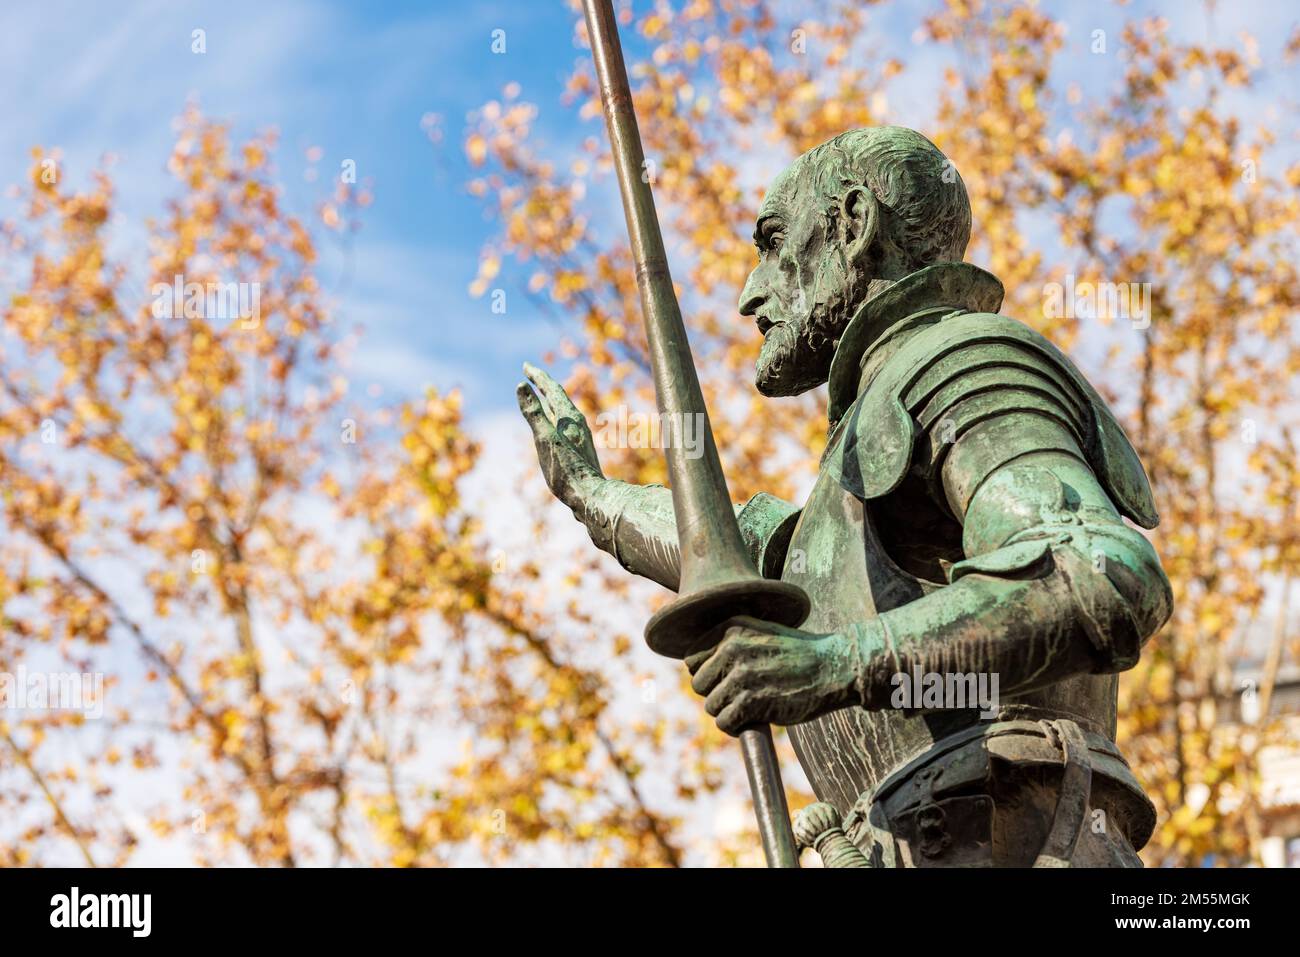 Bronze statue of Don Quixote de la Mancha, part of the monument to Miguel de Cervantes, 1929, in Plaza de Espana, Madrid downtown, Spain, Europe. Stock Photo